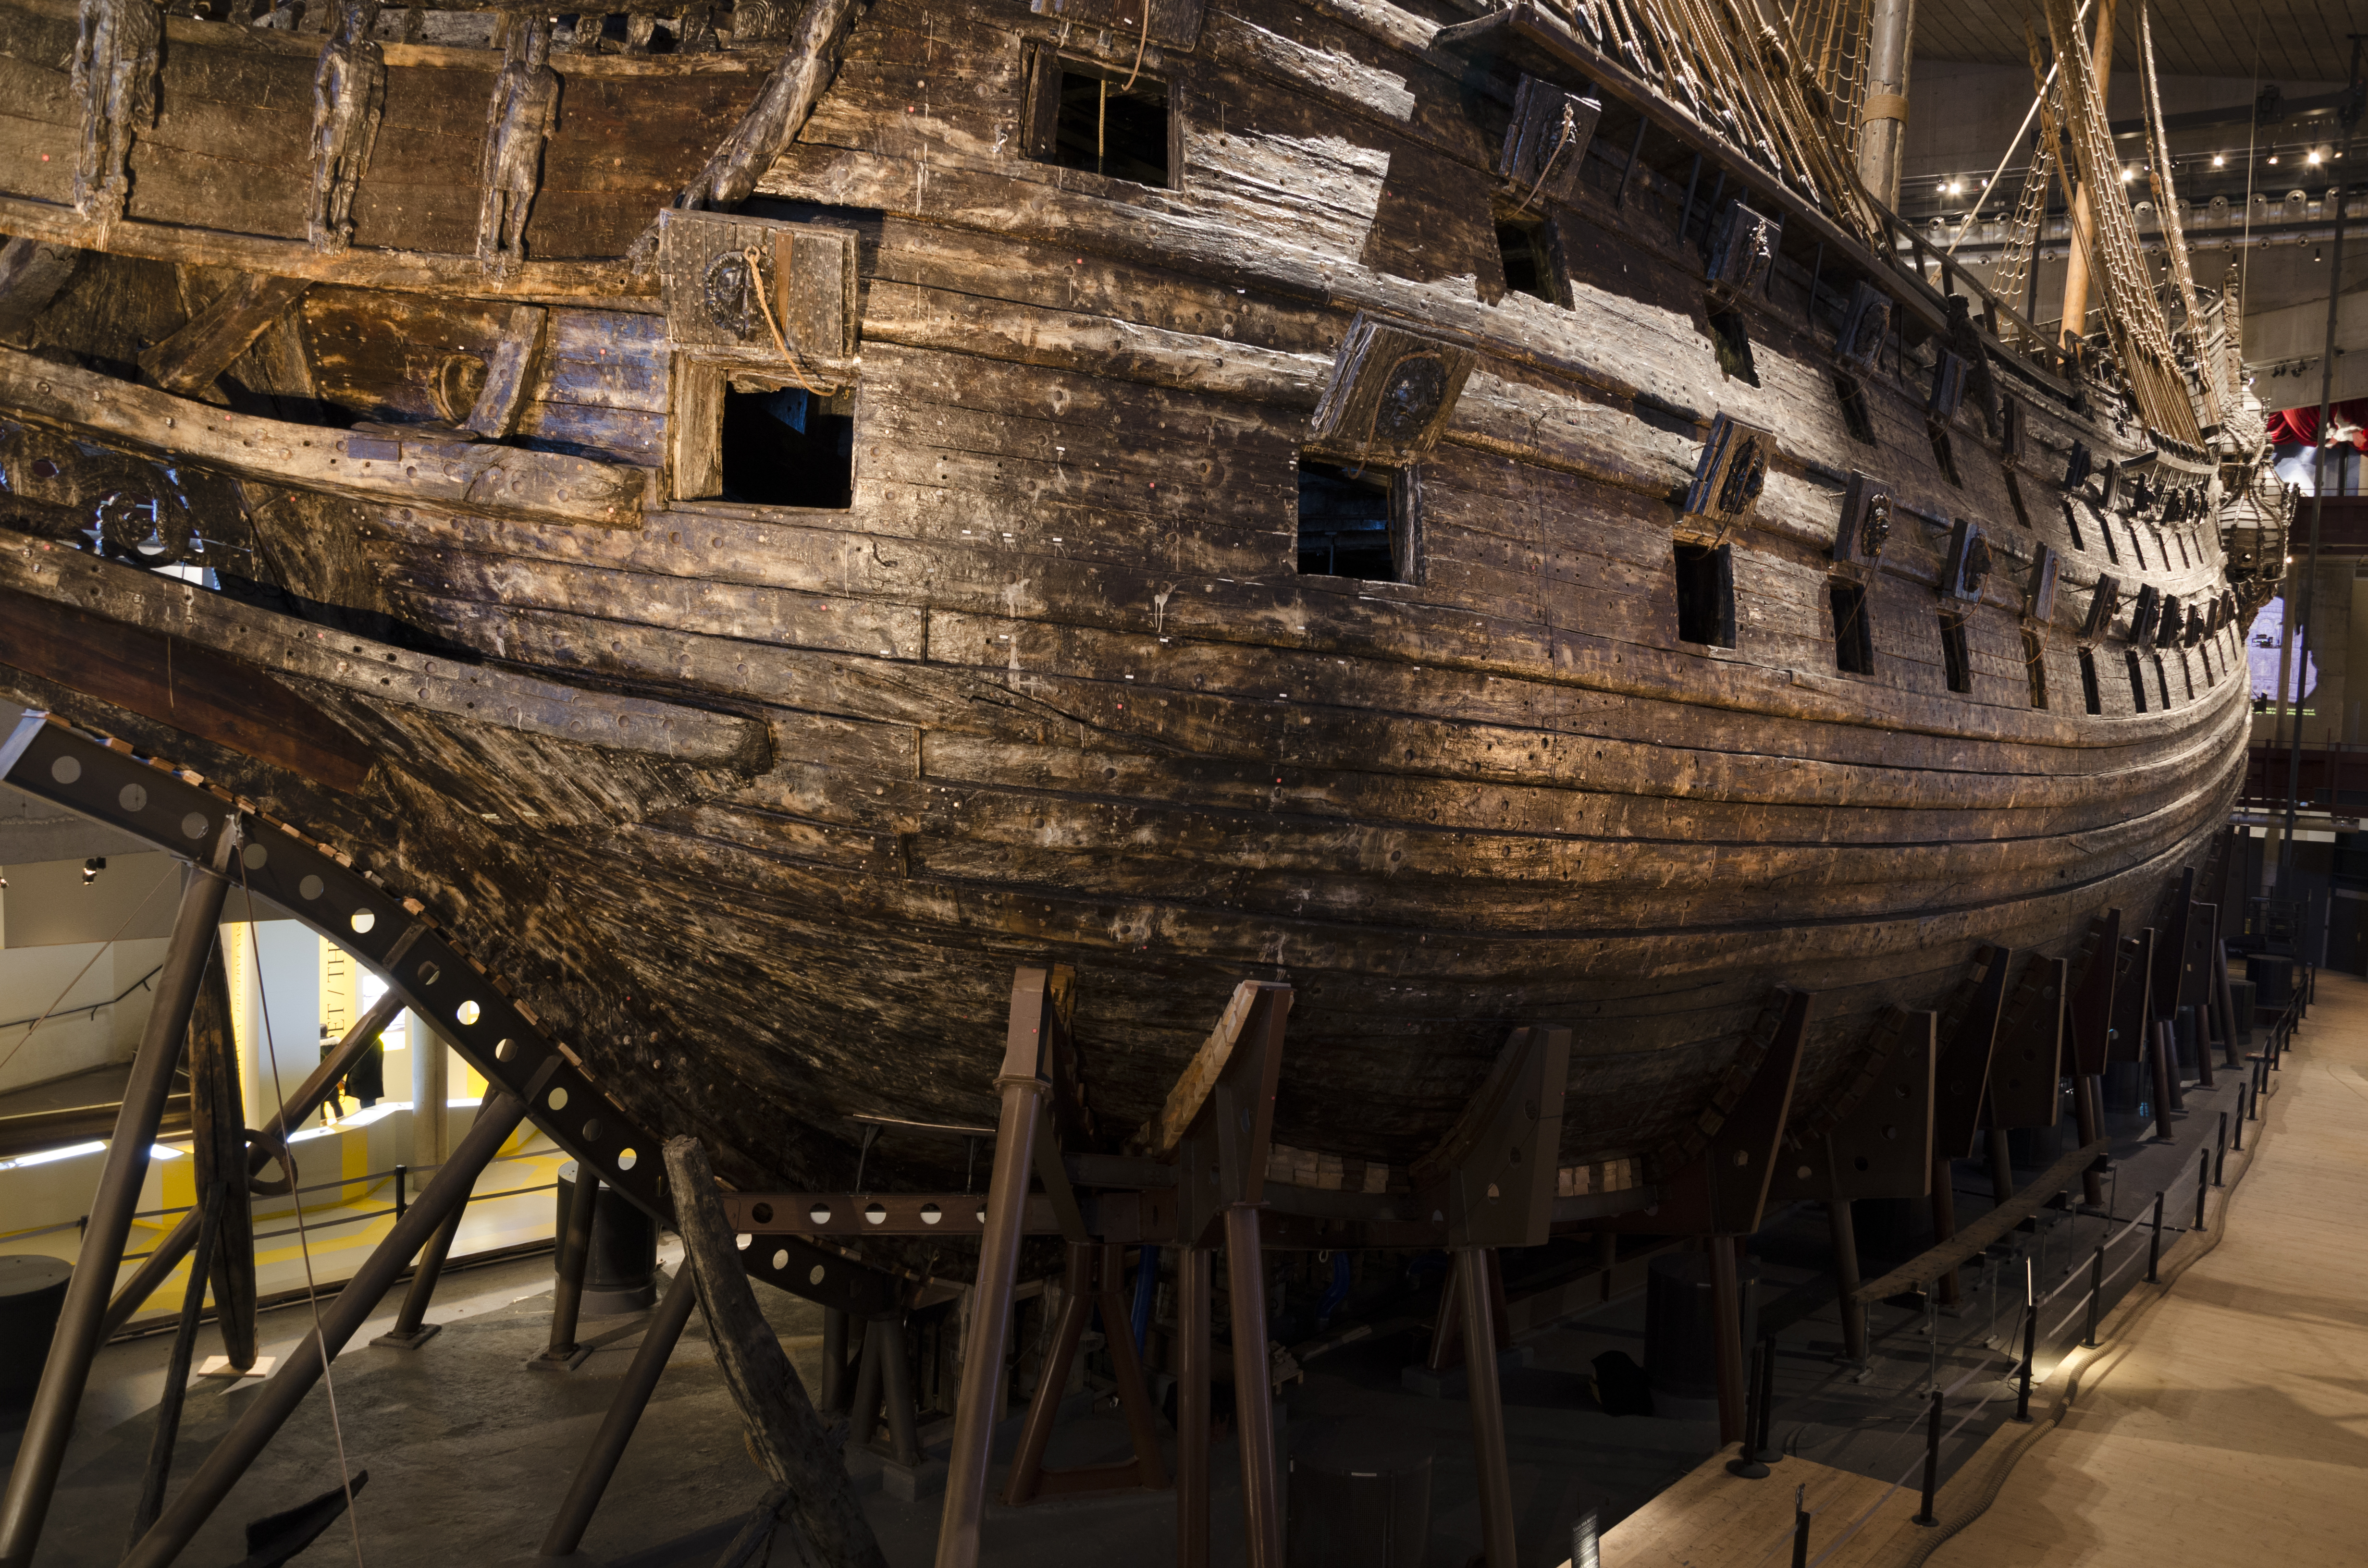 Regalskeppet Vasa baug babord (2)